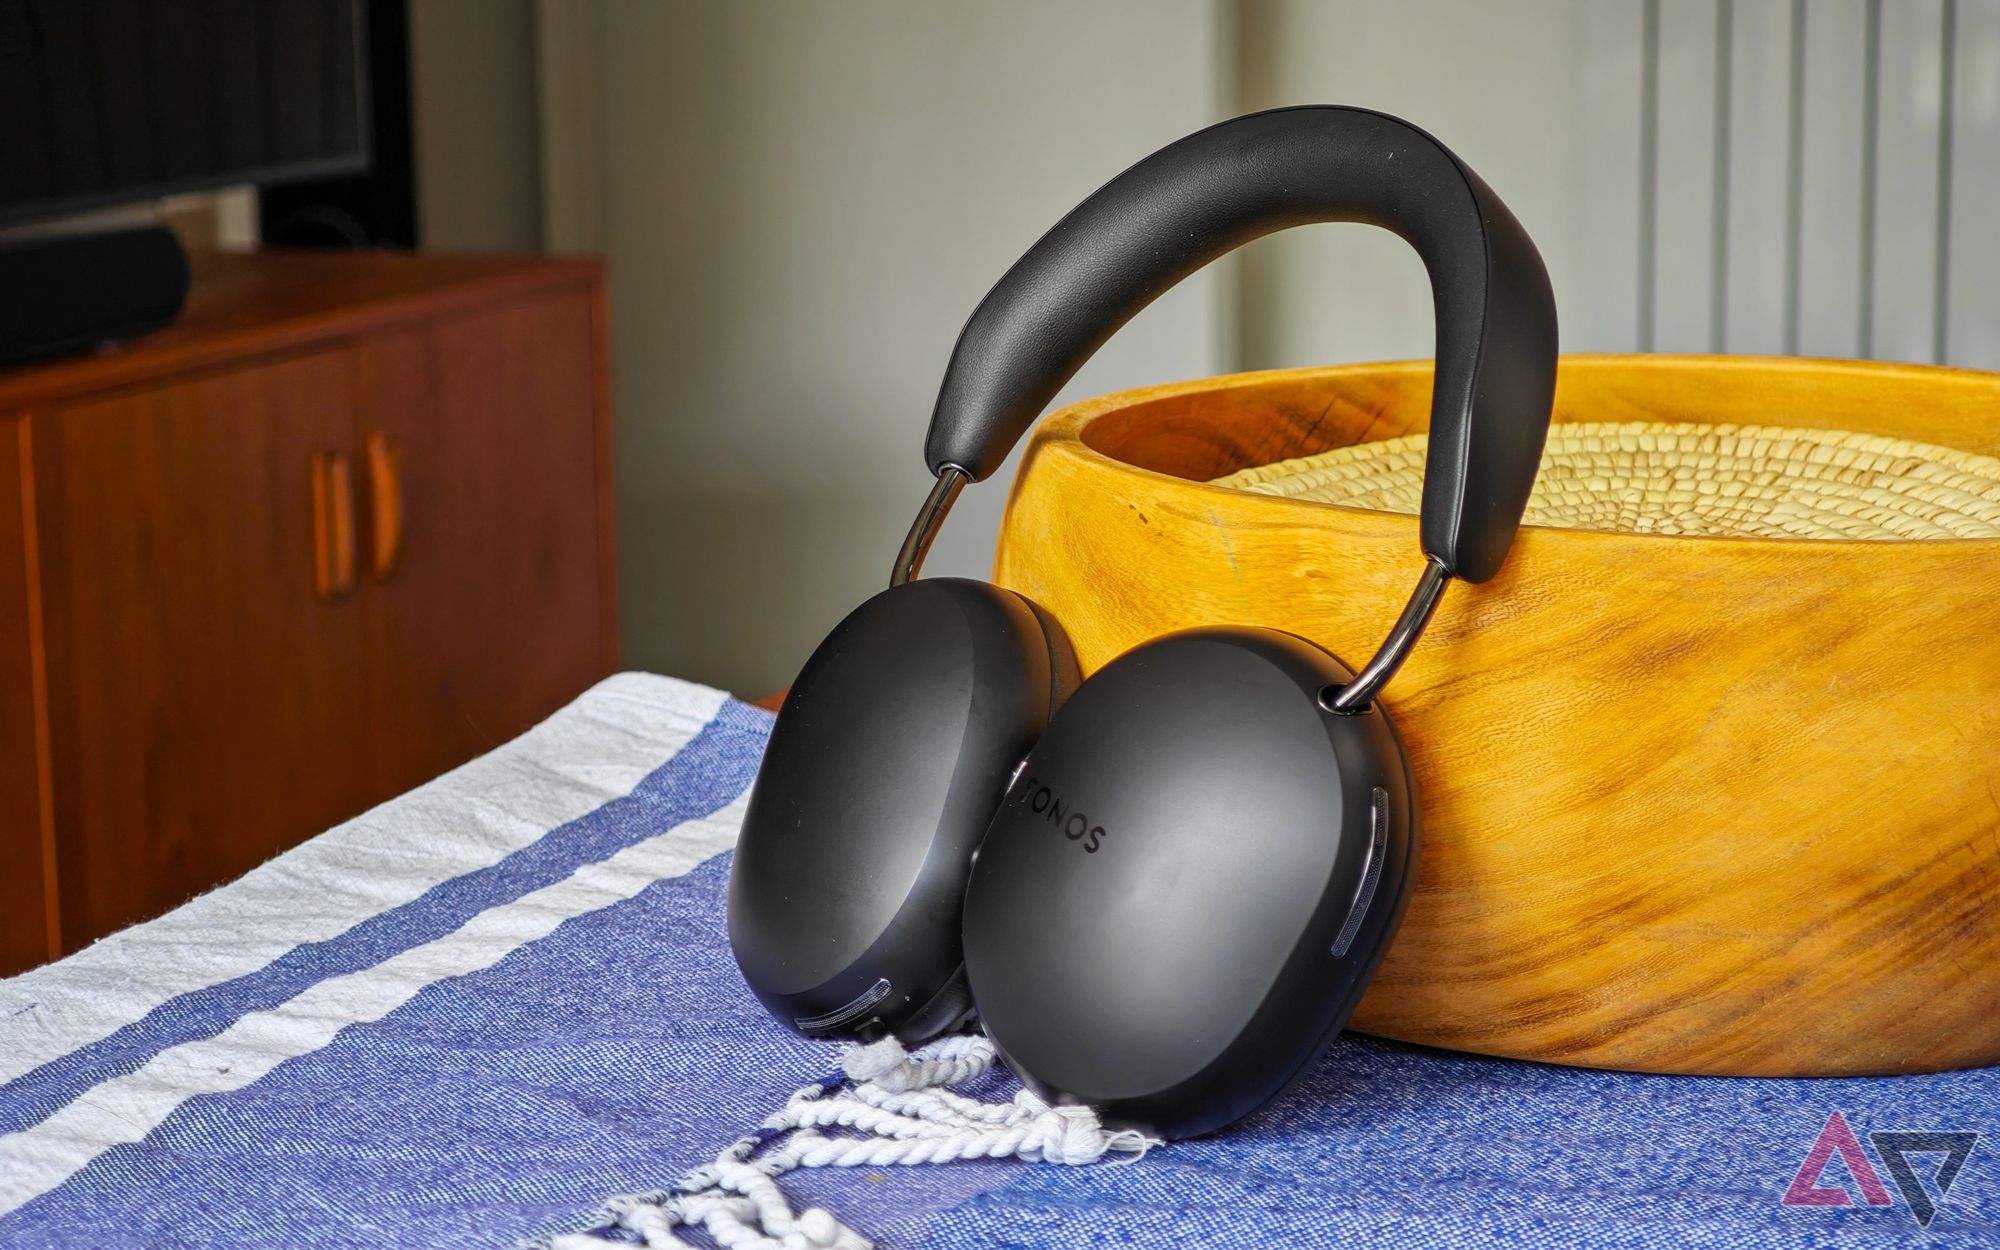 Fones de ouvido Sonos Ace apoiados em uma tigela de madeira sobre uma mesa com uma toalha de mesa azul